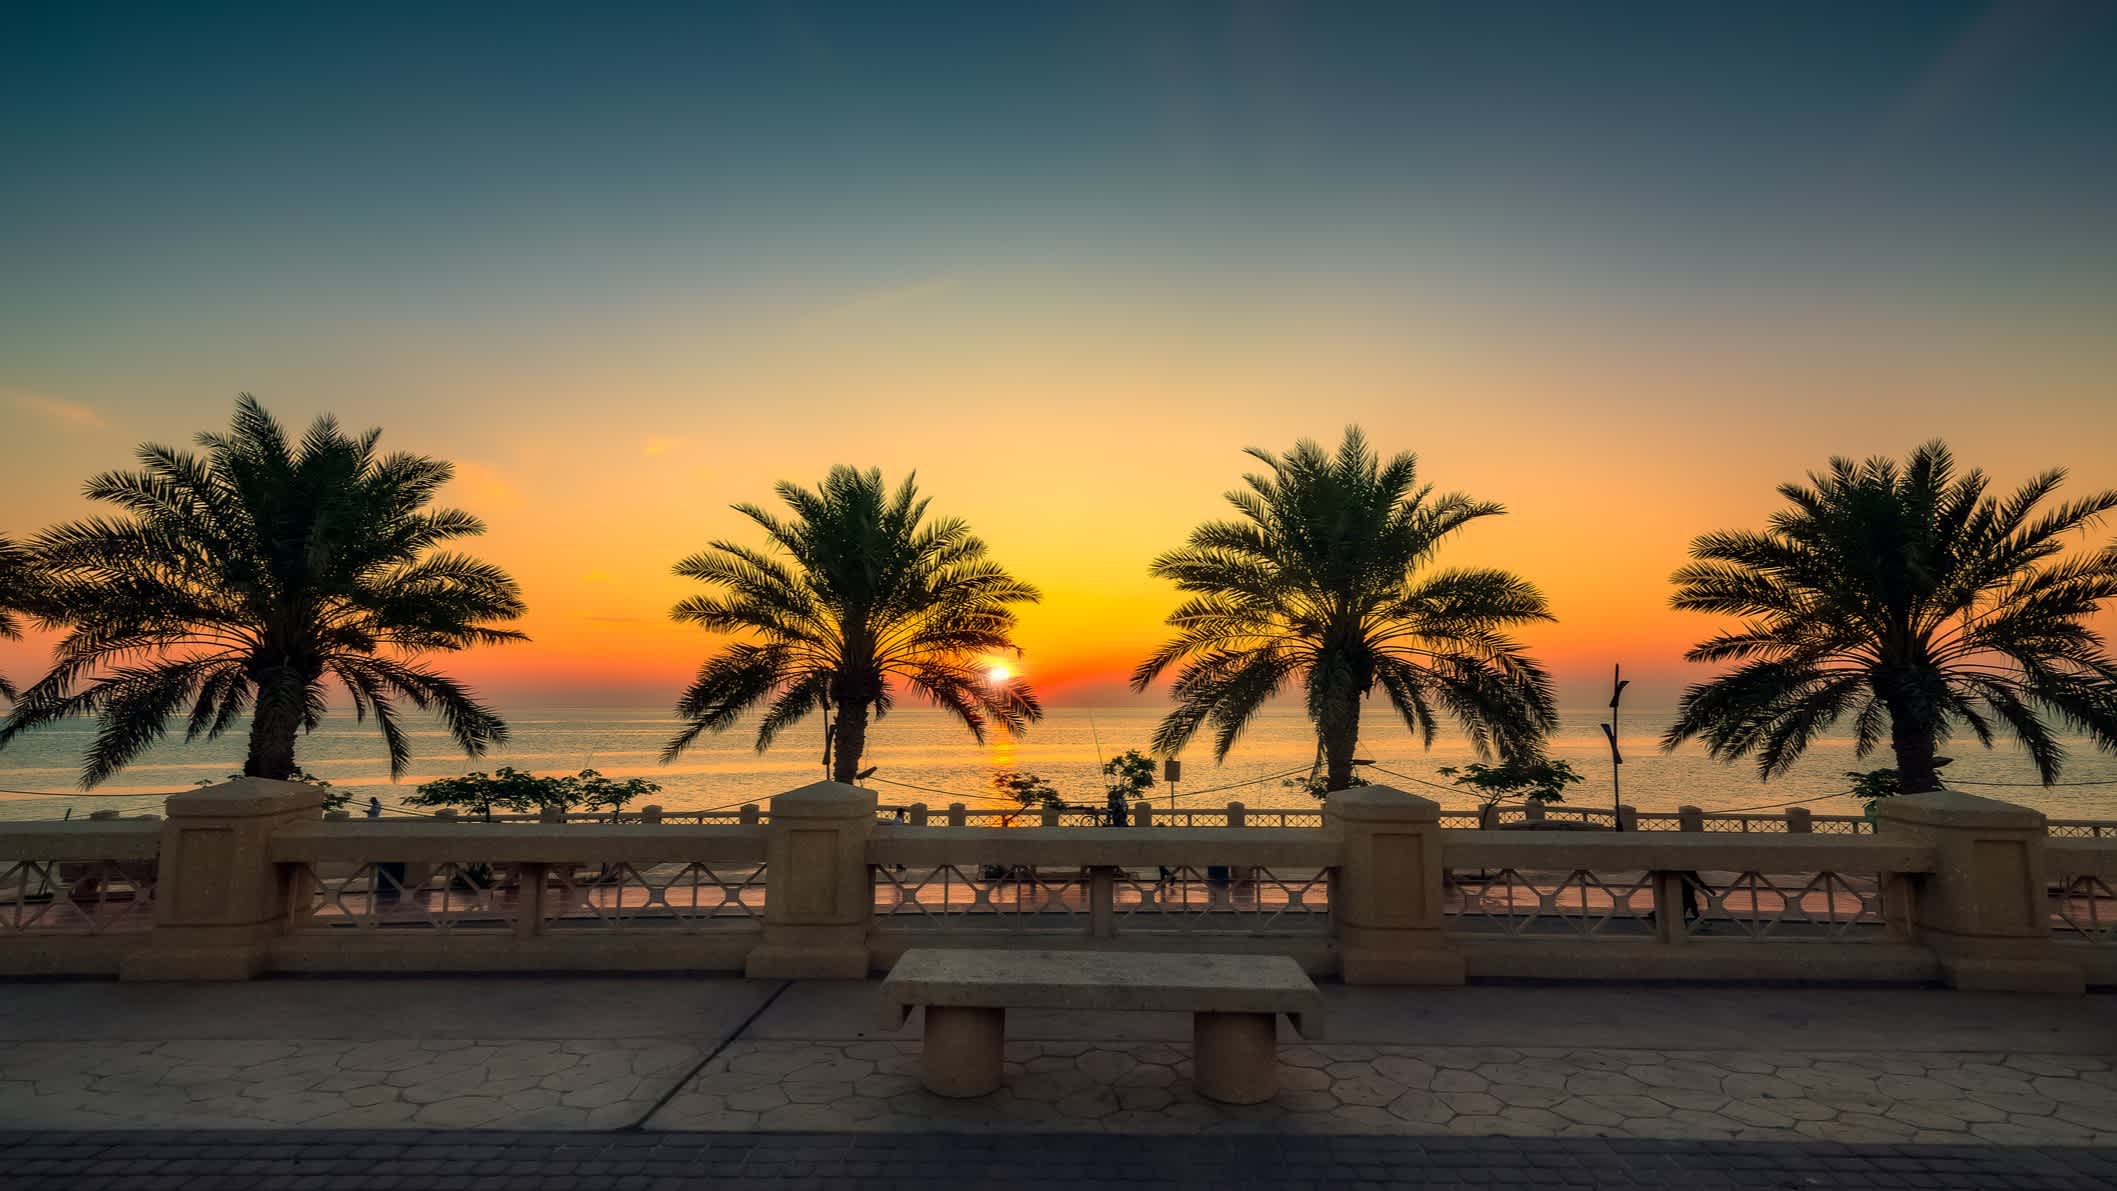 Al-Khobar Corniche -Saudi-Arabien